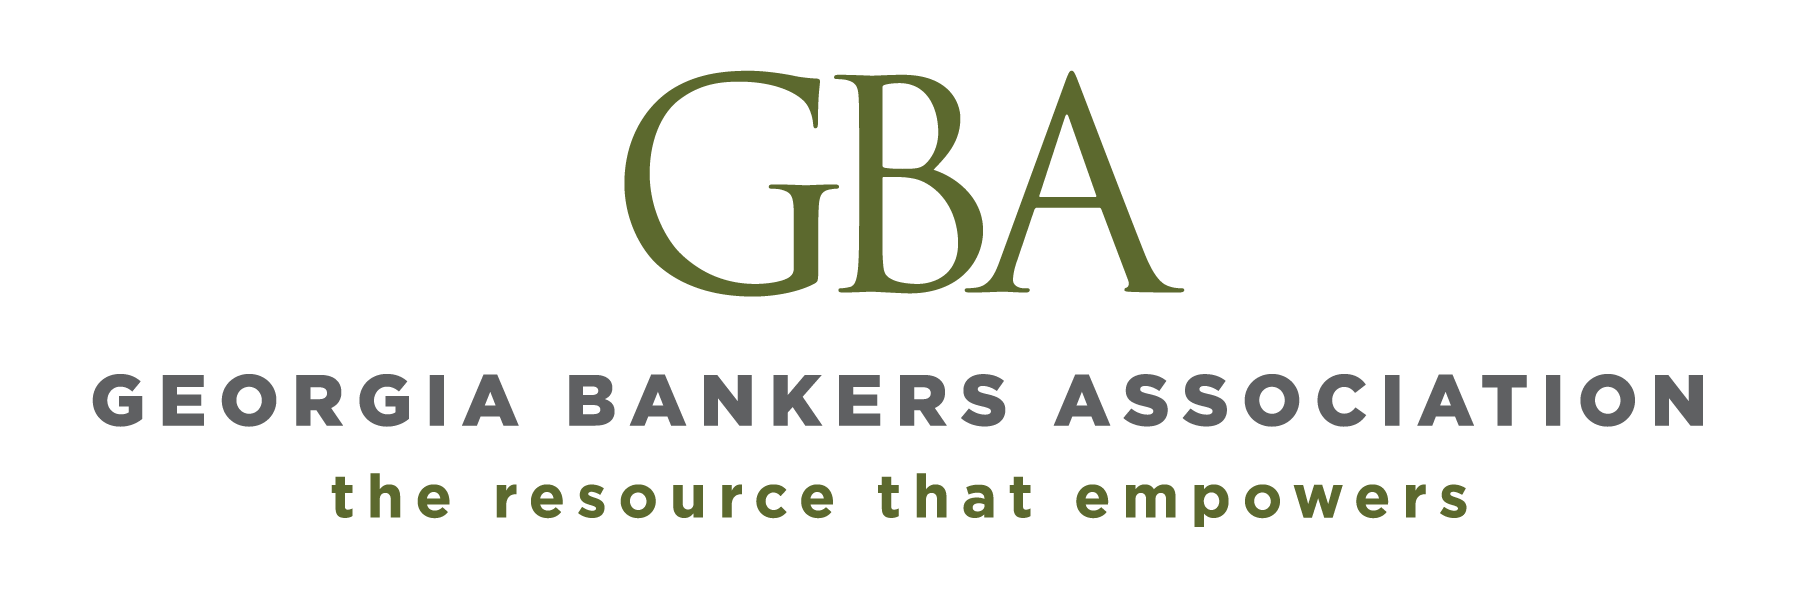 Georgia Bankers